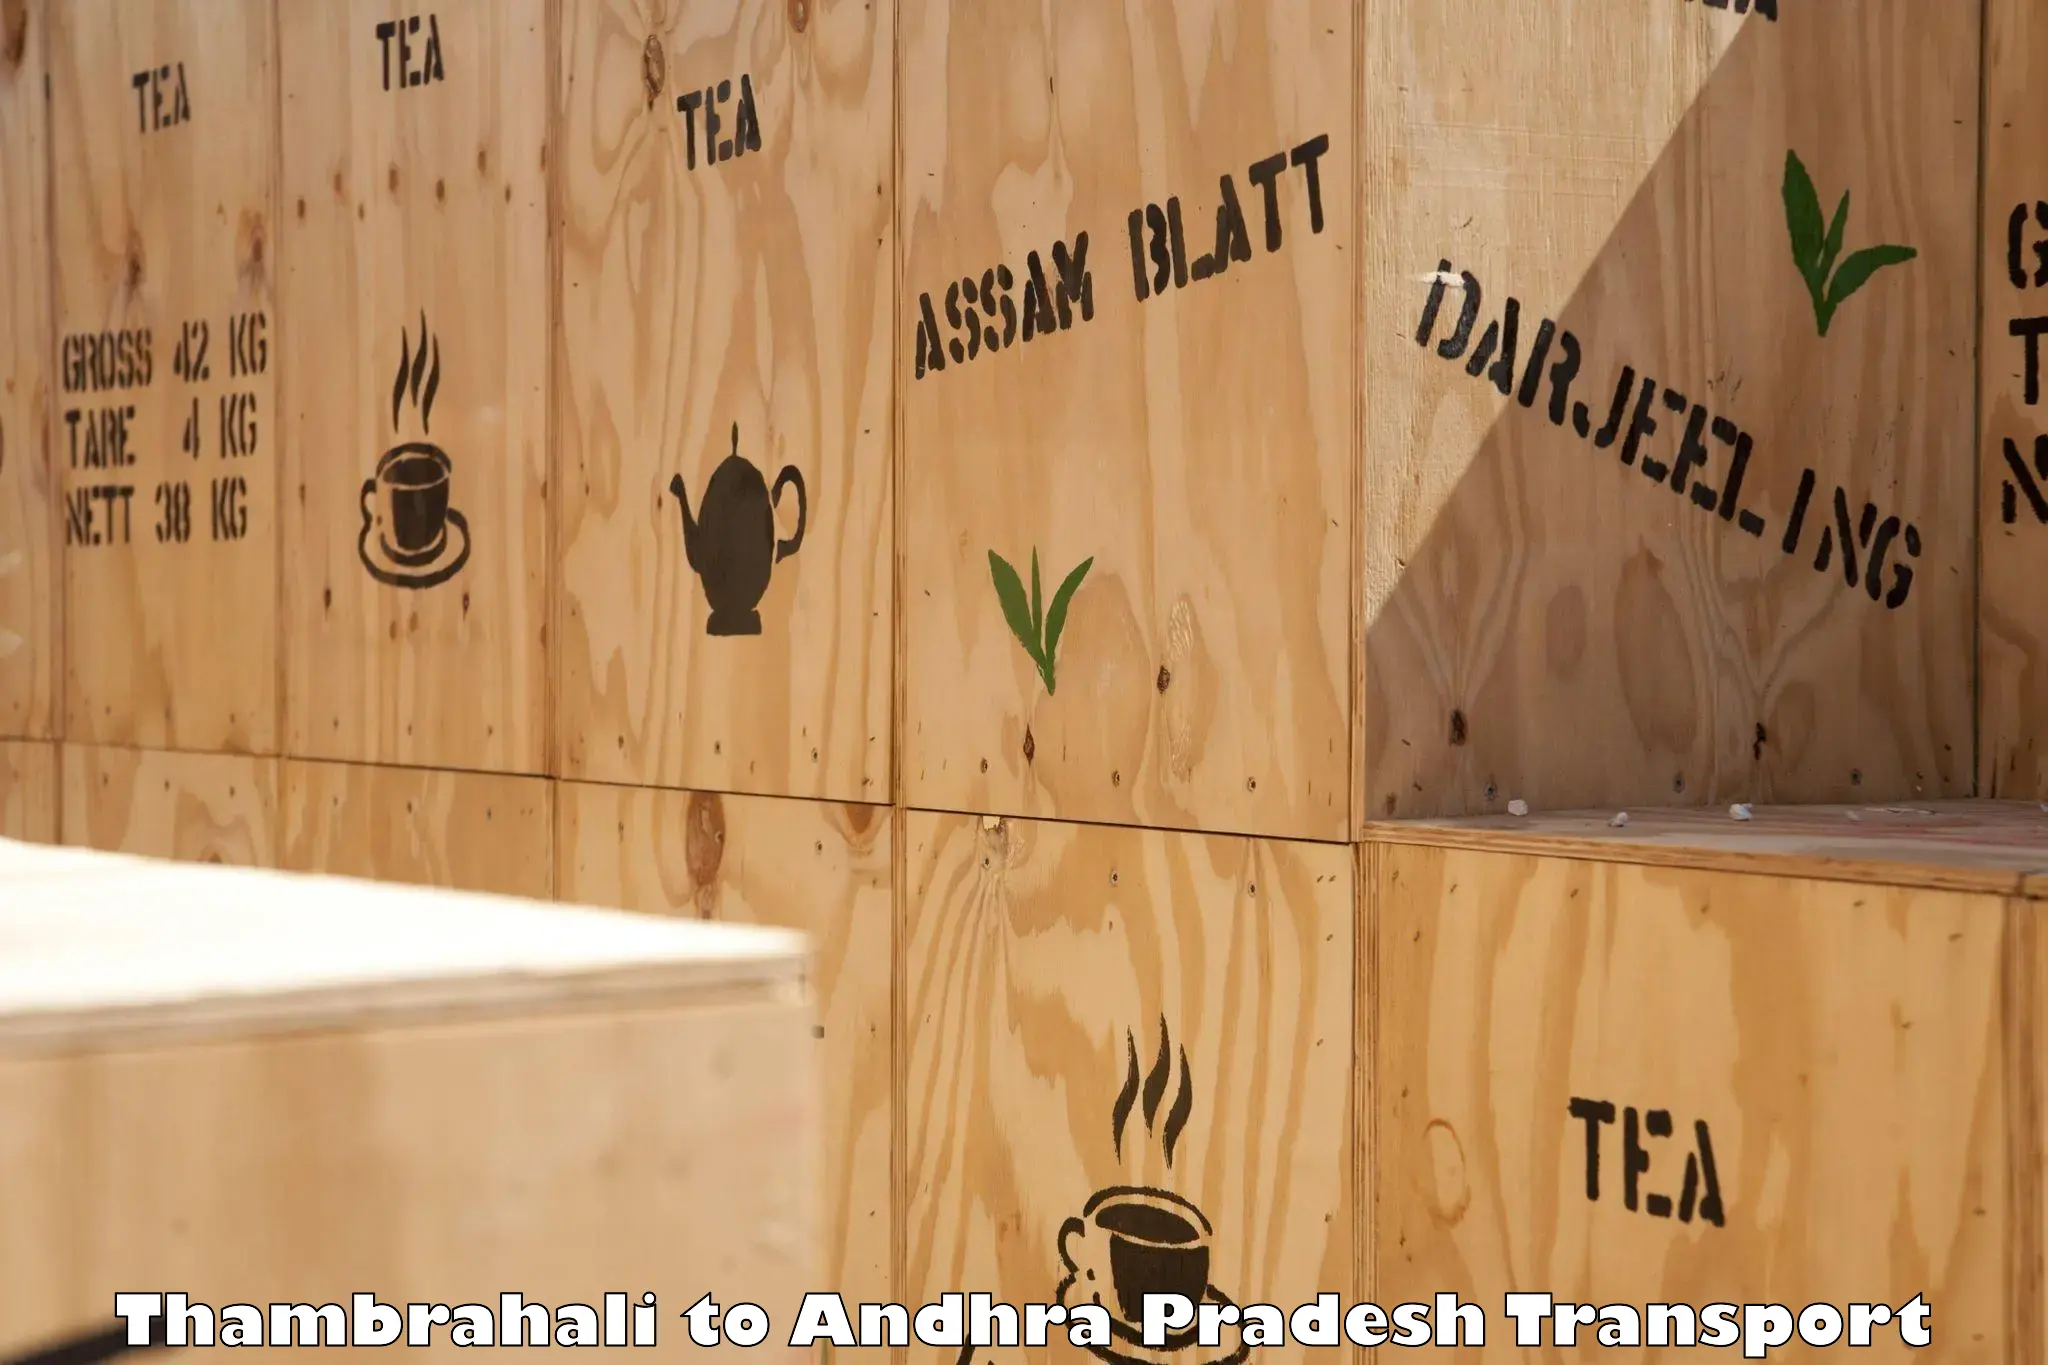 Vehicle parcel service Thambrahali to Andhra Pradesh